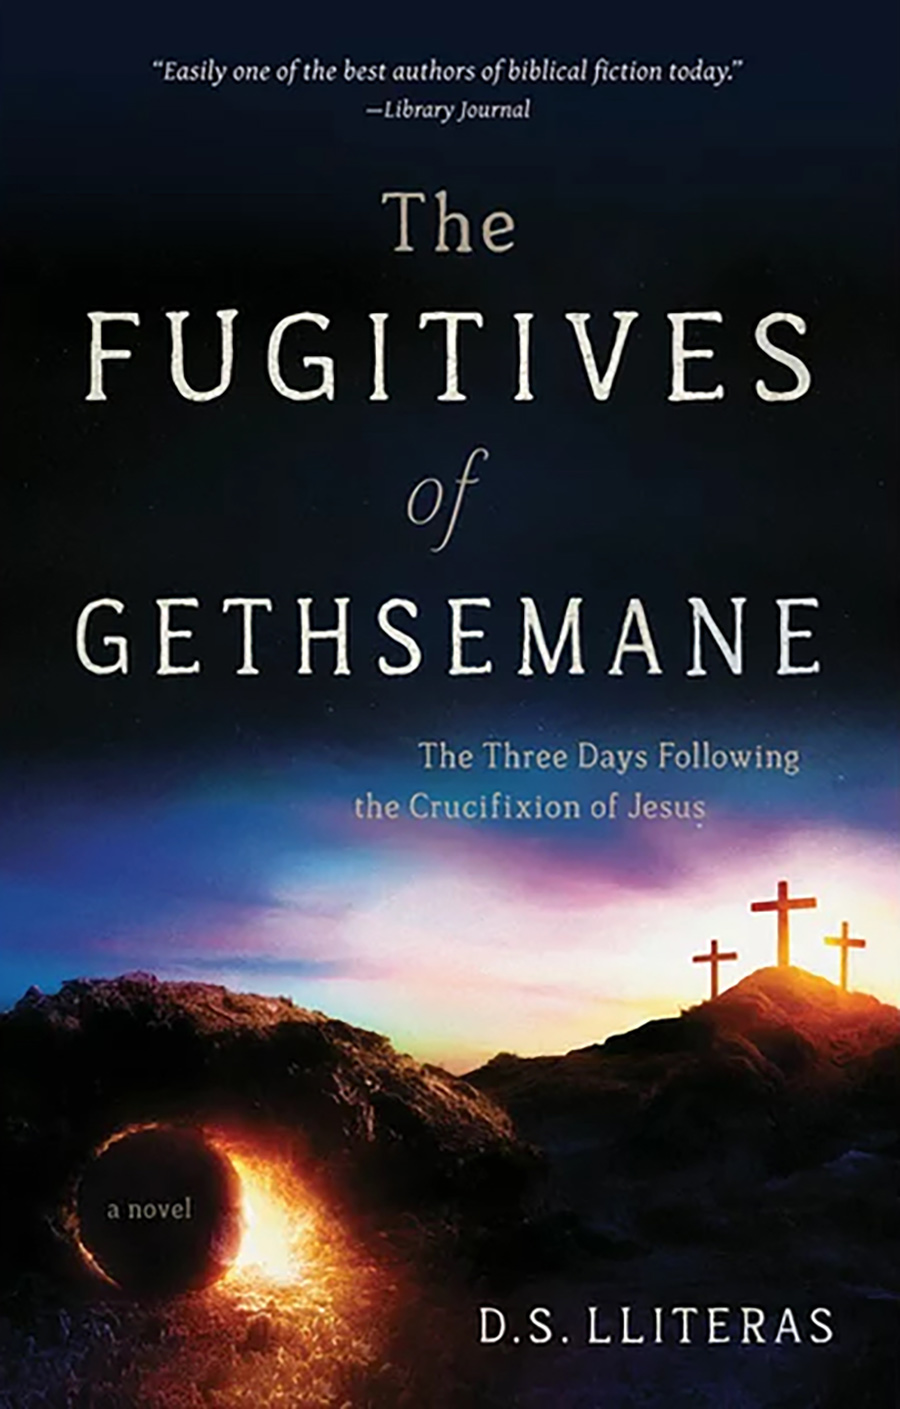 Book of The Fugitives of Gethsemane D. S. Lliteras 